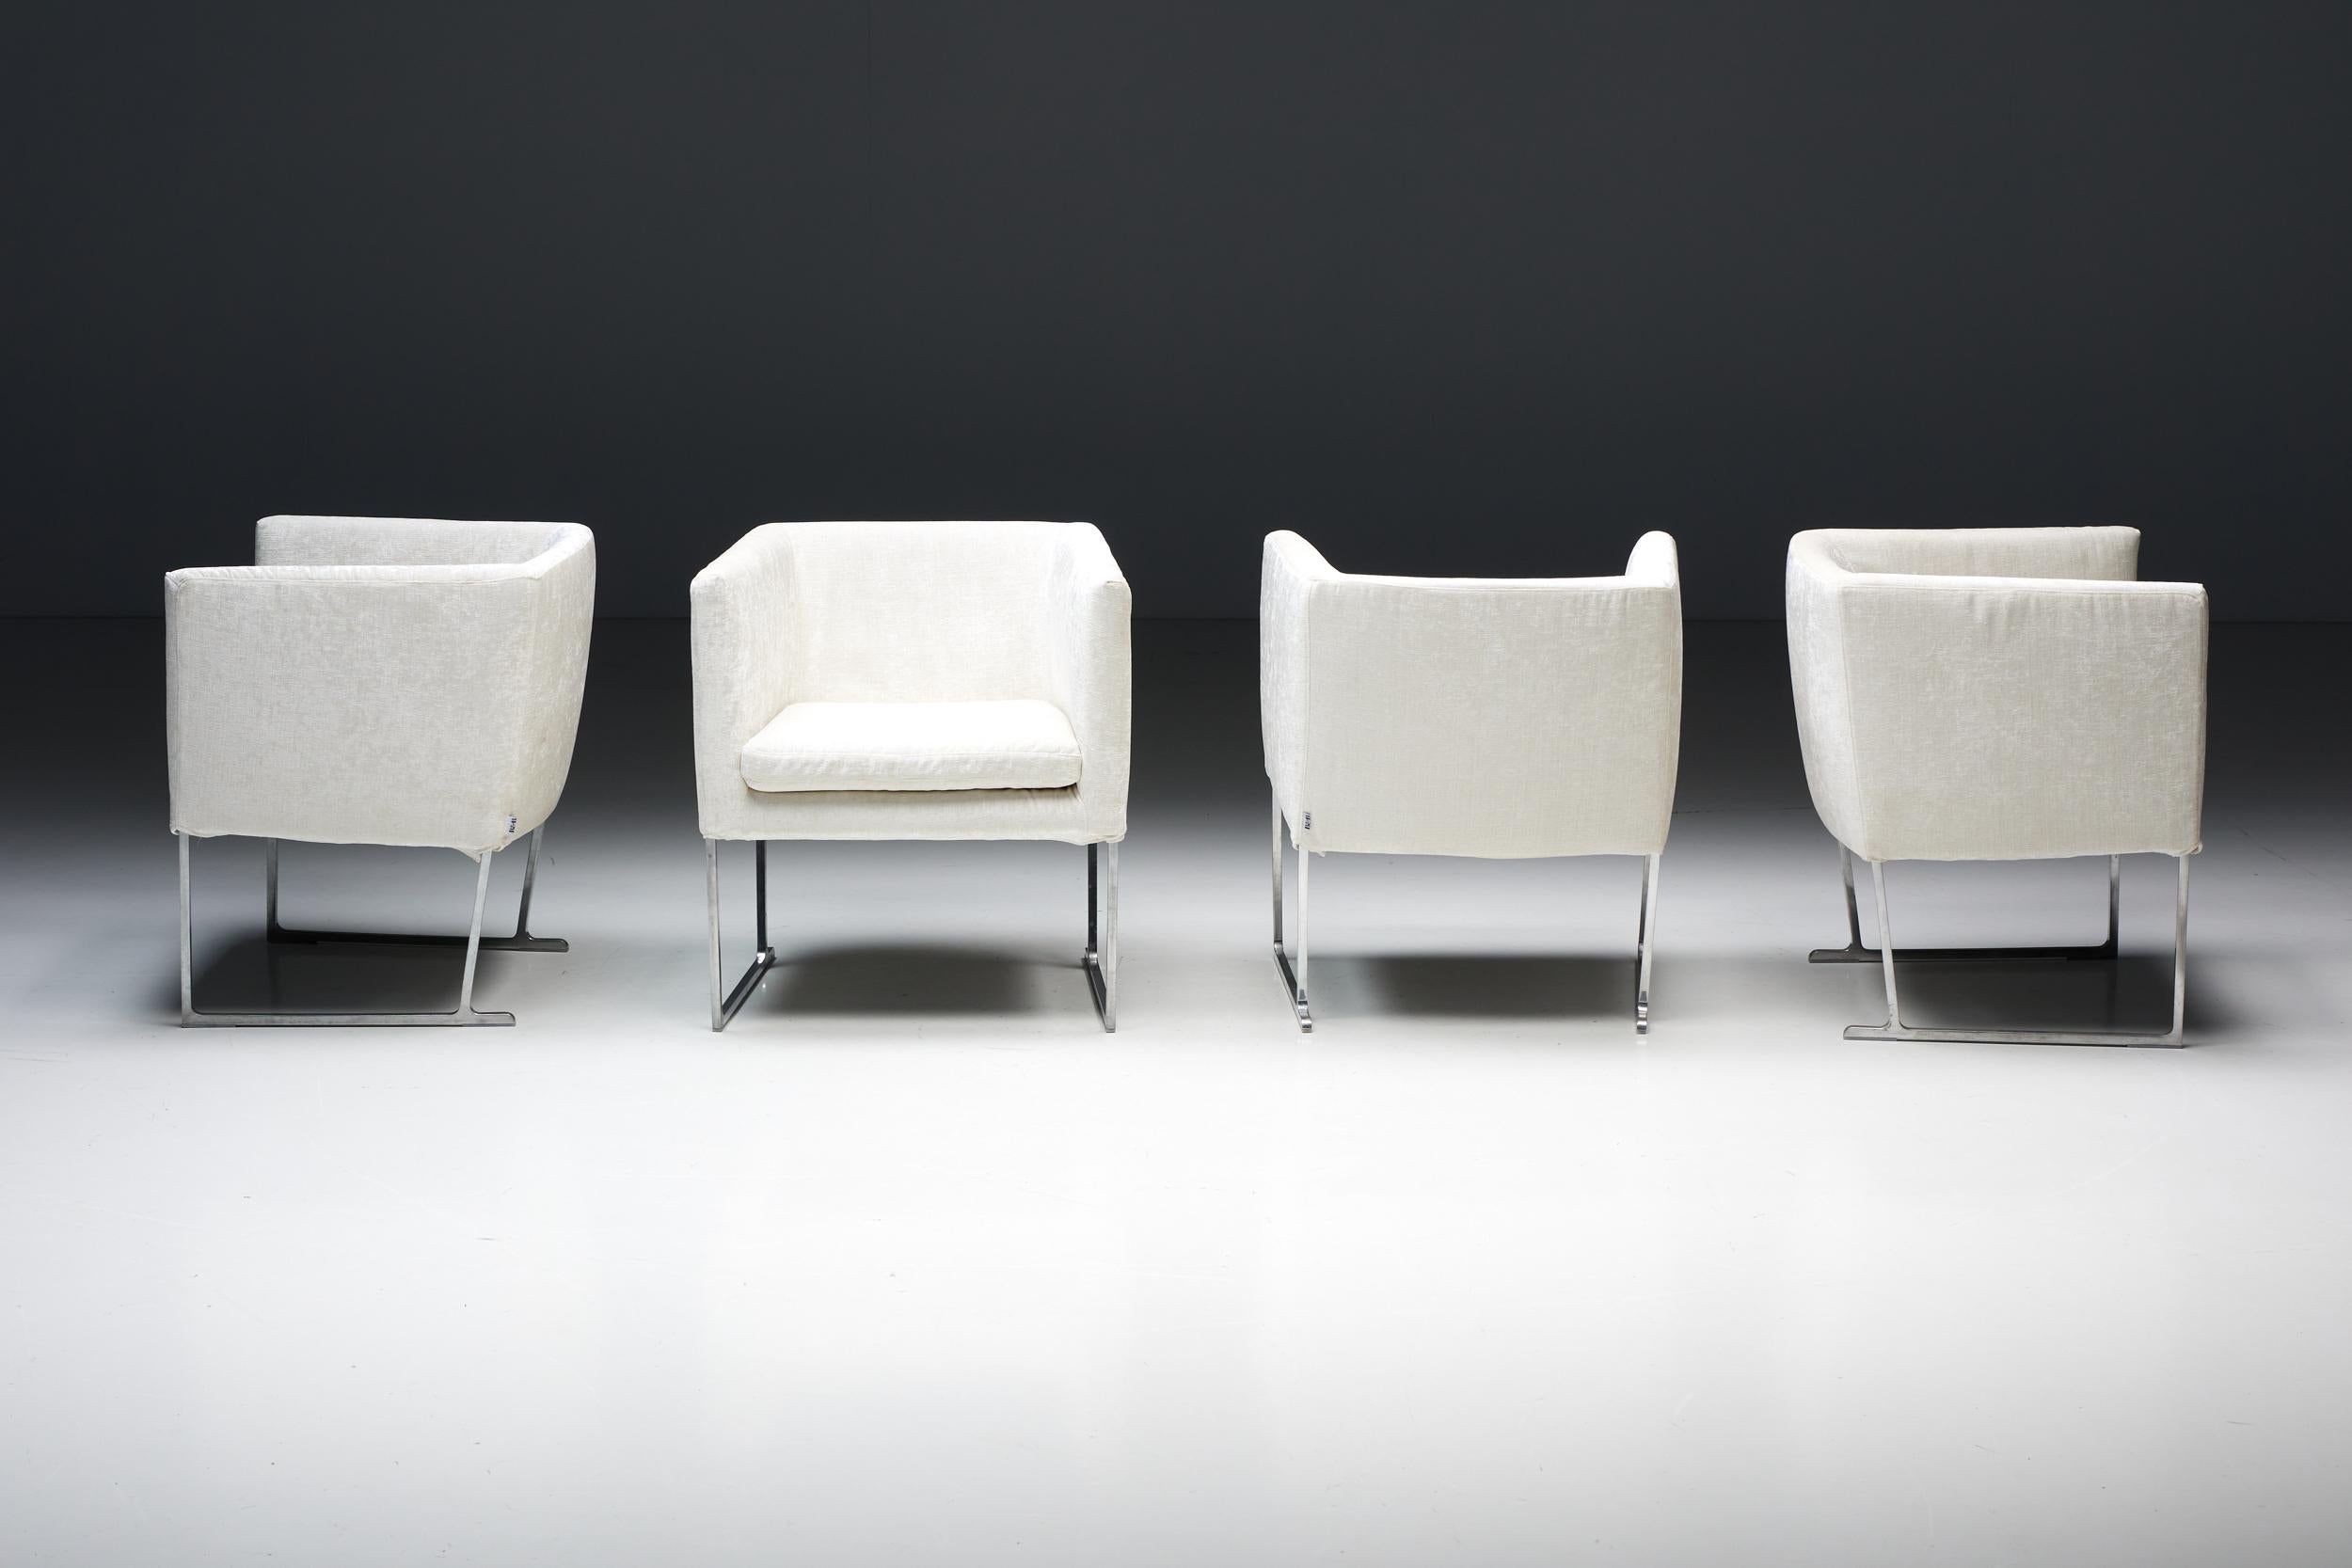 Fauteuils Solo d'Antonio Whitingio en luxueux velours blanc ivoire pour B&B Italia. Fabriqués sous la marque estimée B&B Italia, ces fauteuils solo redéfinissent le concept de sièges contemporains grâce à leurs caractéristiques distinctives. Ils se